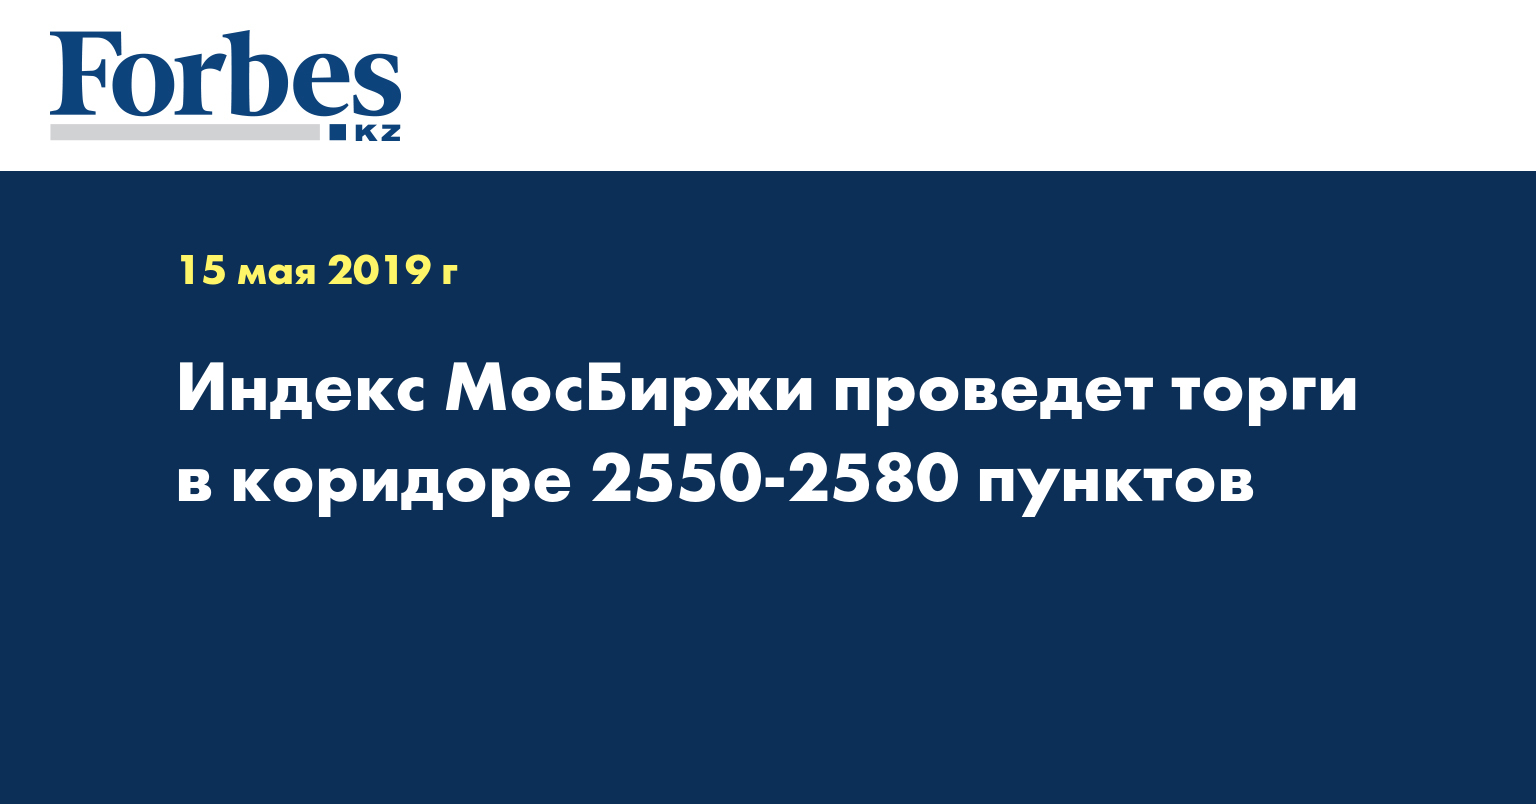 Индекс МосБиржи проведет торги в коридоре 2550-2580 пунктов